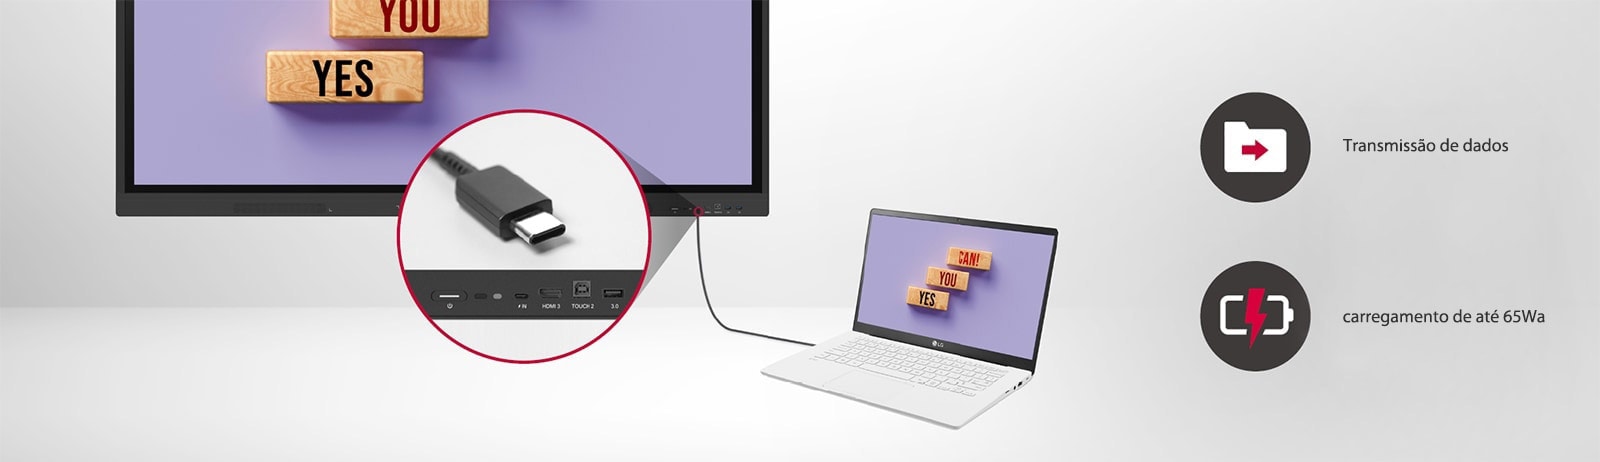 O LG CreateBoard transmite dados facilmente por meio da conectividade USB-C e pode fornecer carga de até 65 W.